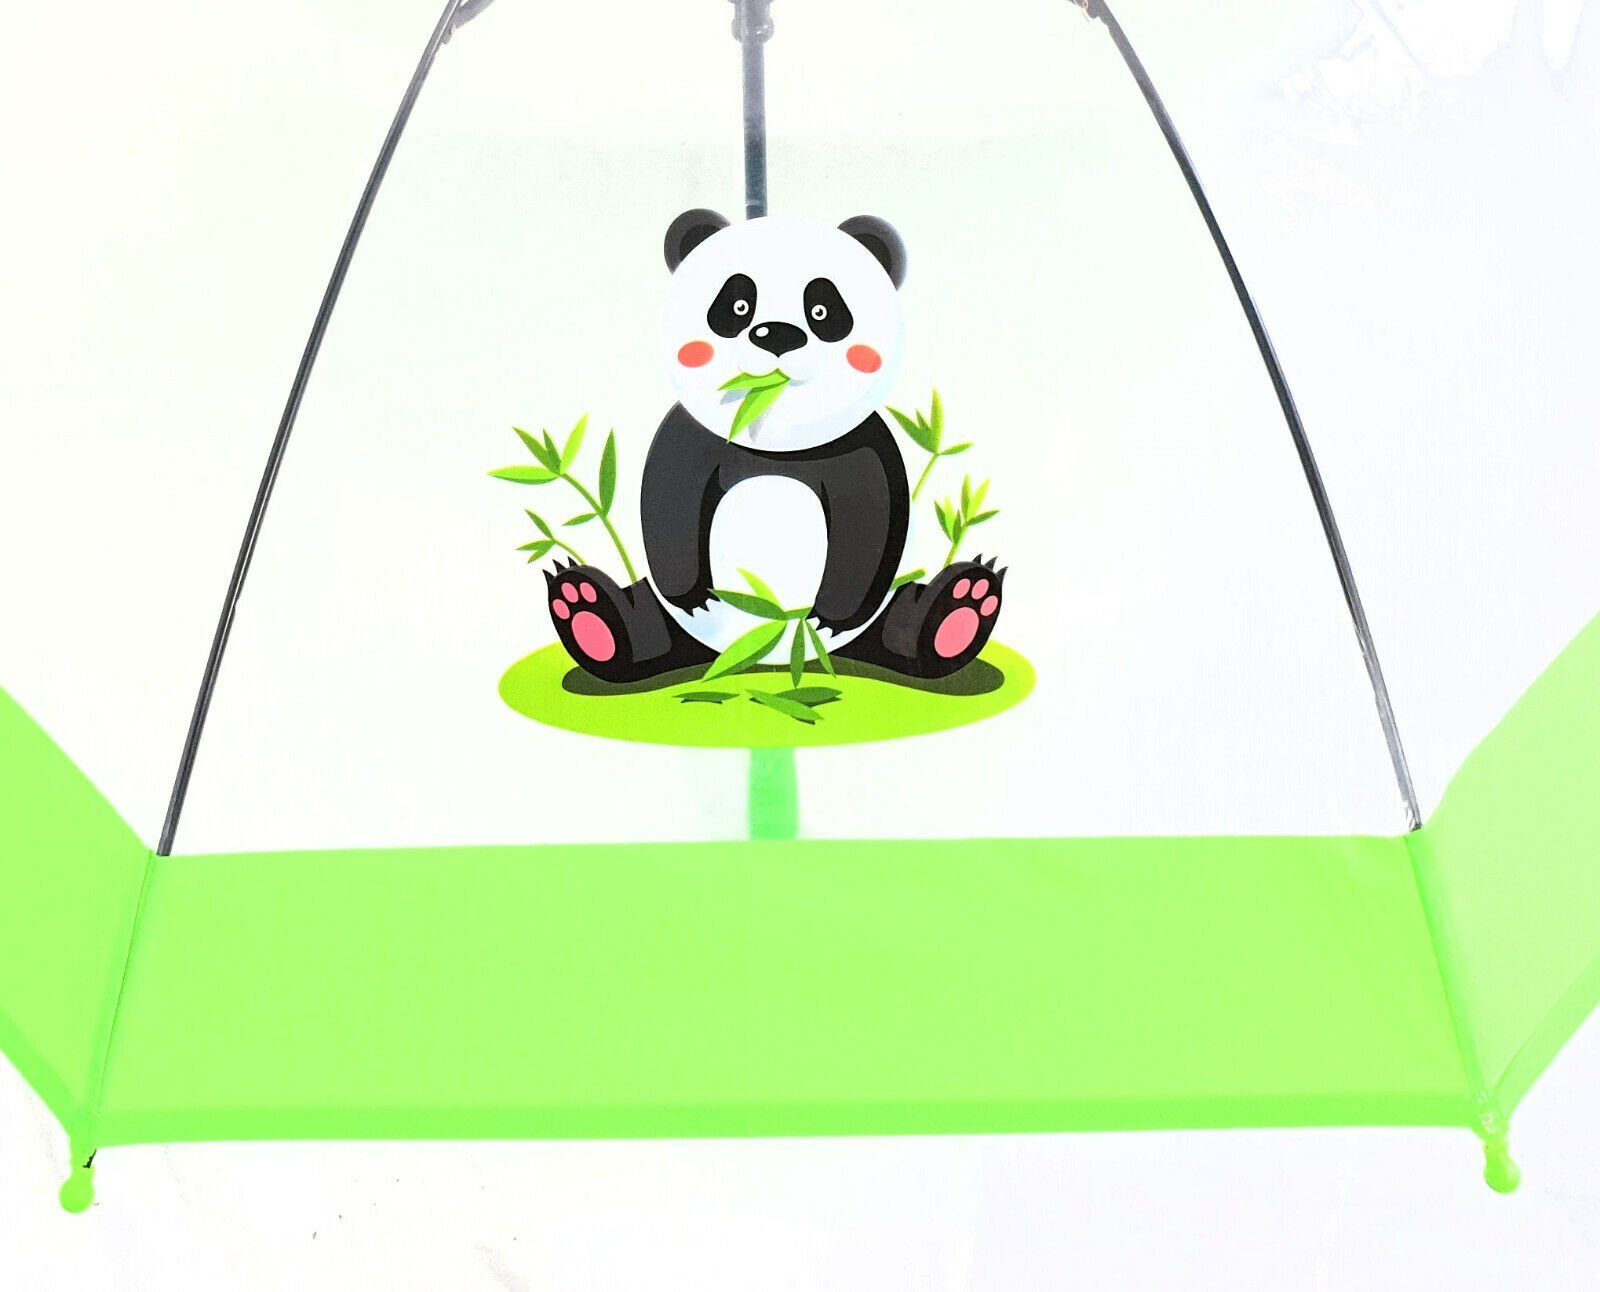 Dr. Neuser Stockregenschirm Regenschirm transparent durchsichtig Kinder grün süßer Automatik, tranparent mit Panda